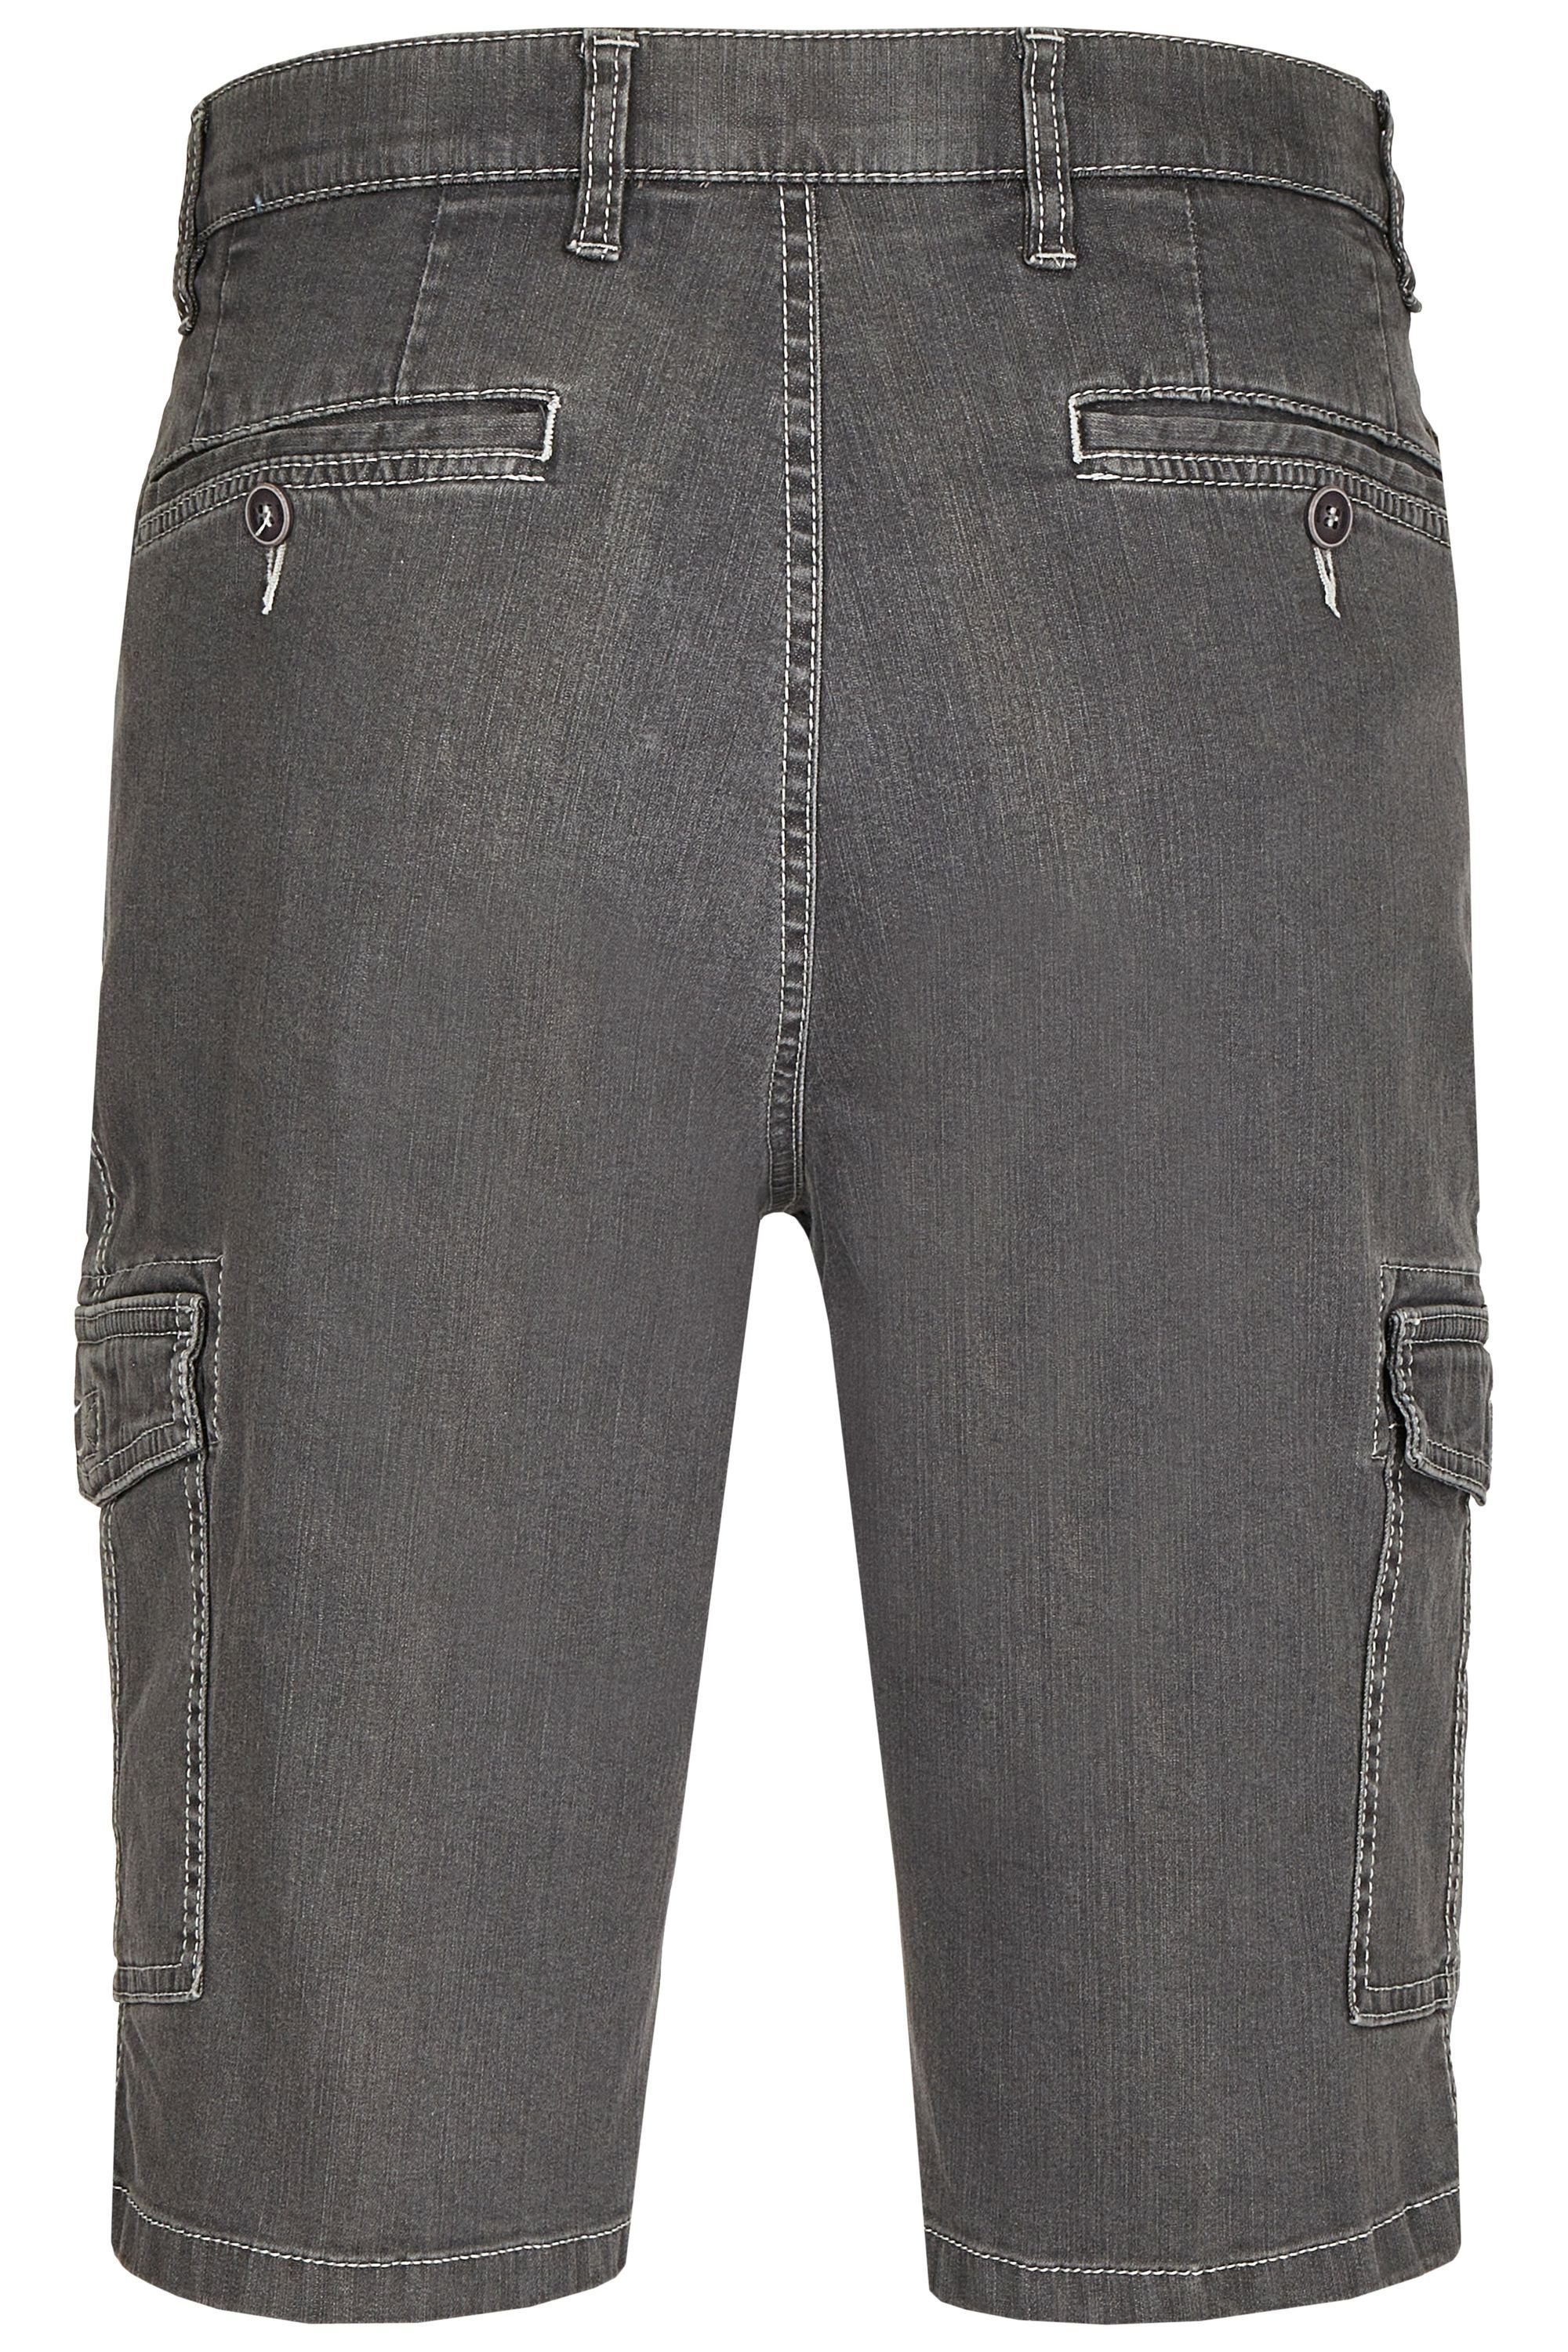 Perfect grey Herren aubi Cargo Sommer Modell Stretch Flex Fit High (54) Shorts aus Baumwolle Jeans Jeans Bequeme 616 aubi: